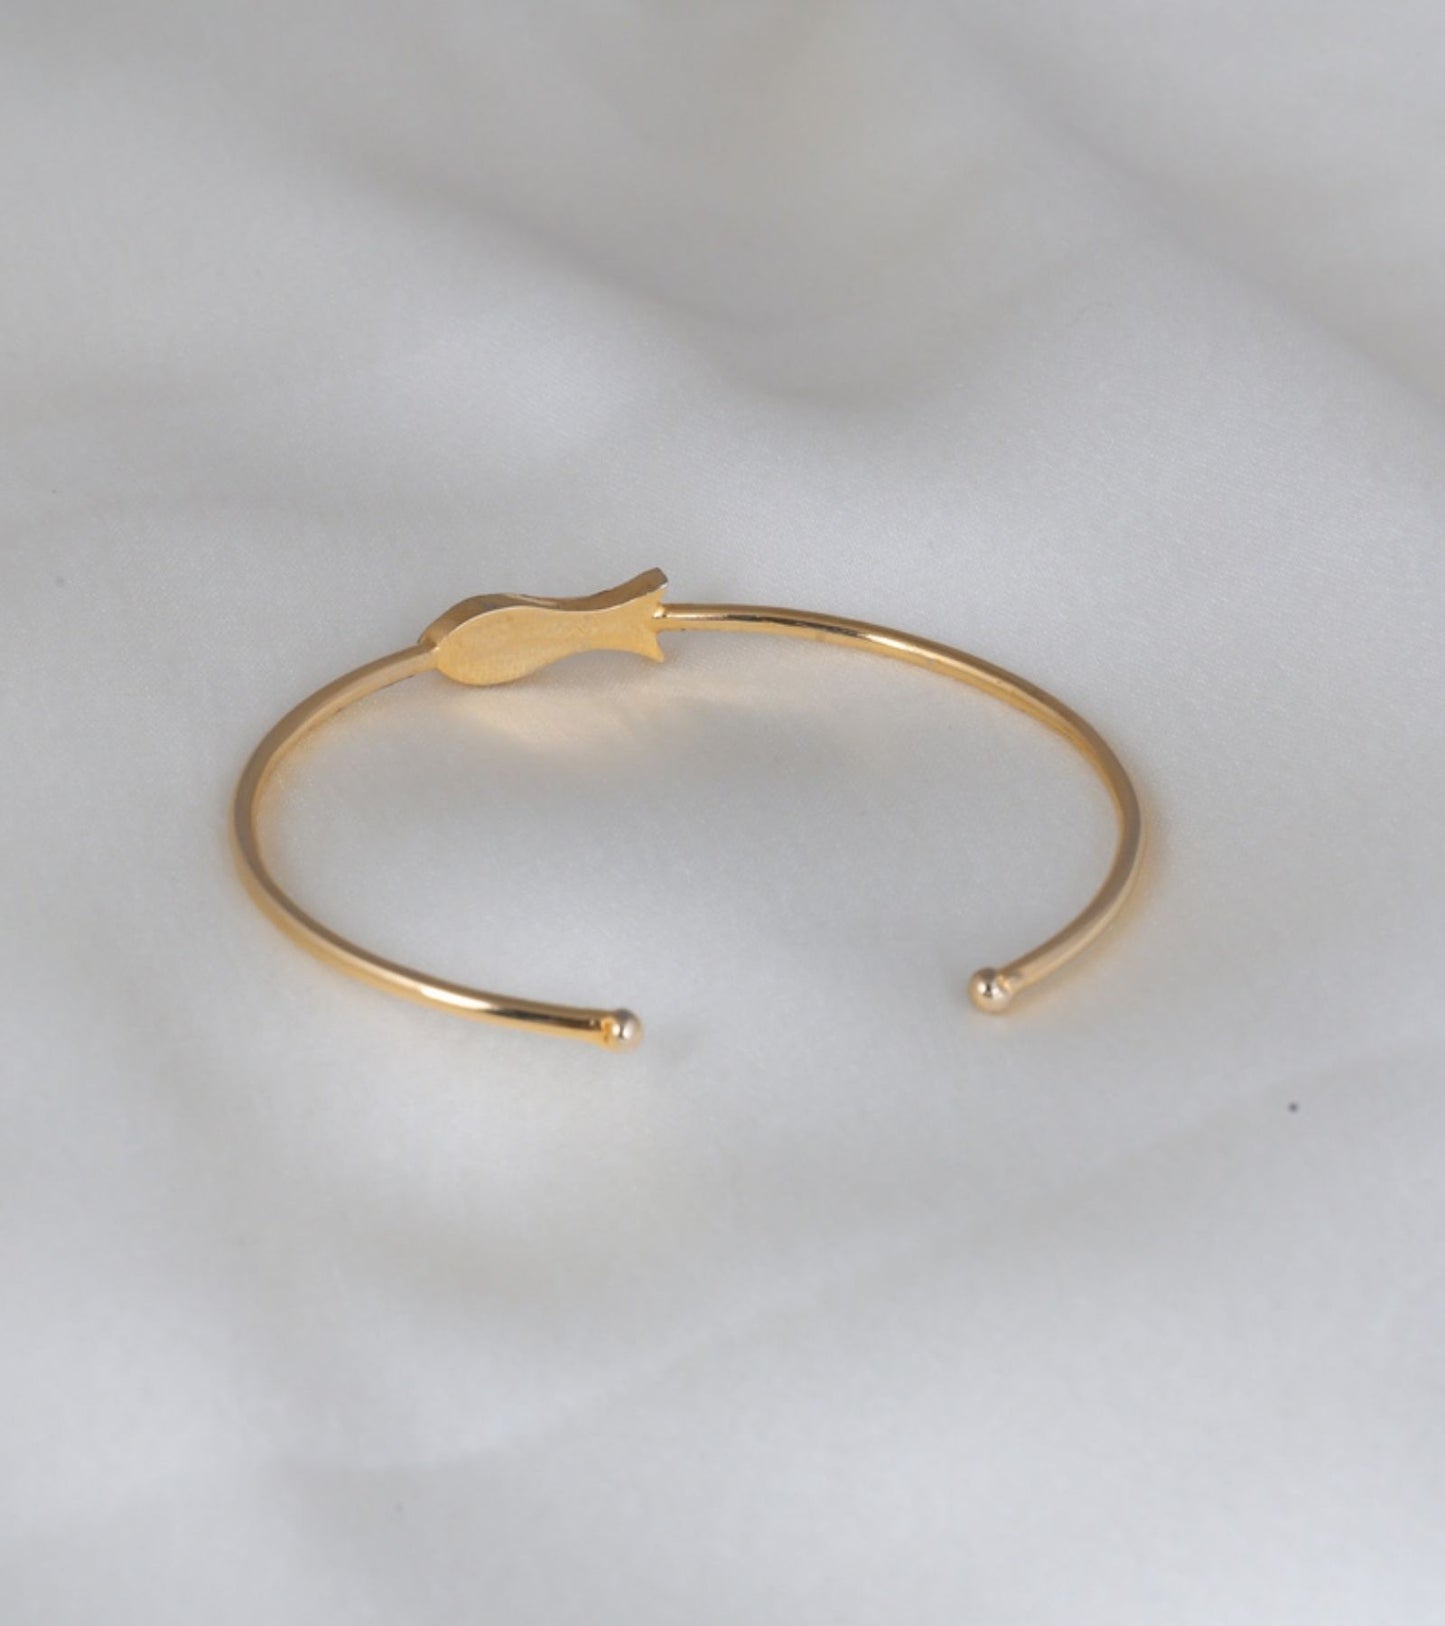 The Delicate Fish Polki Bracelet in Gold